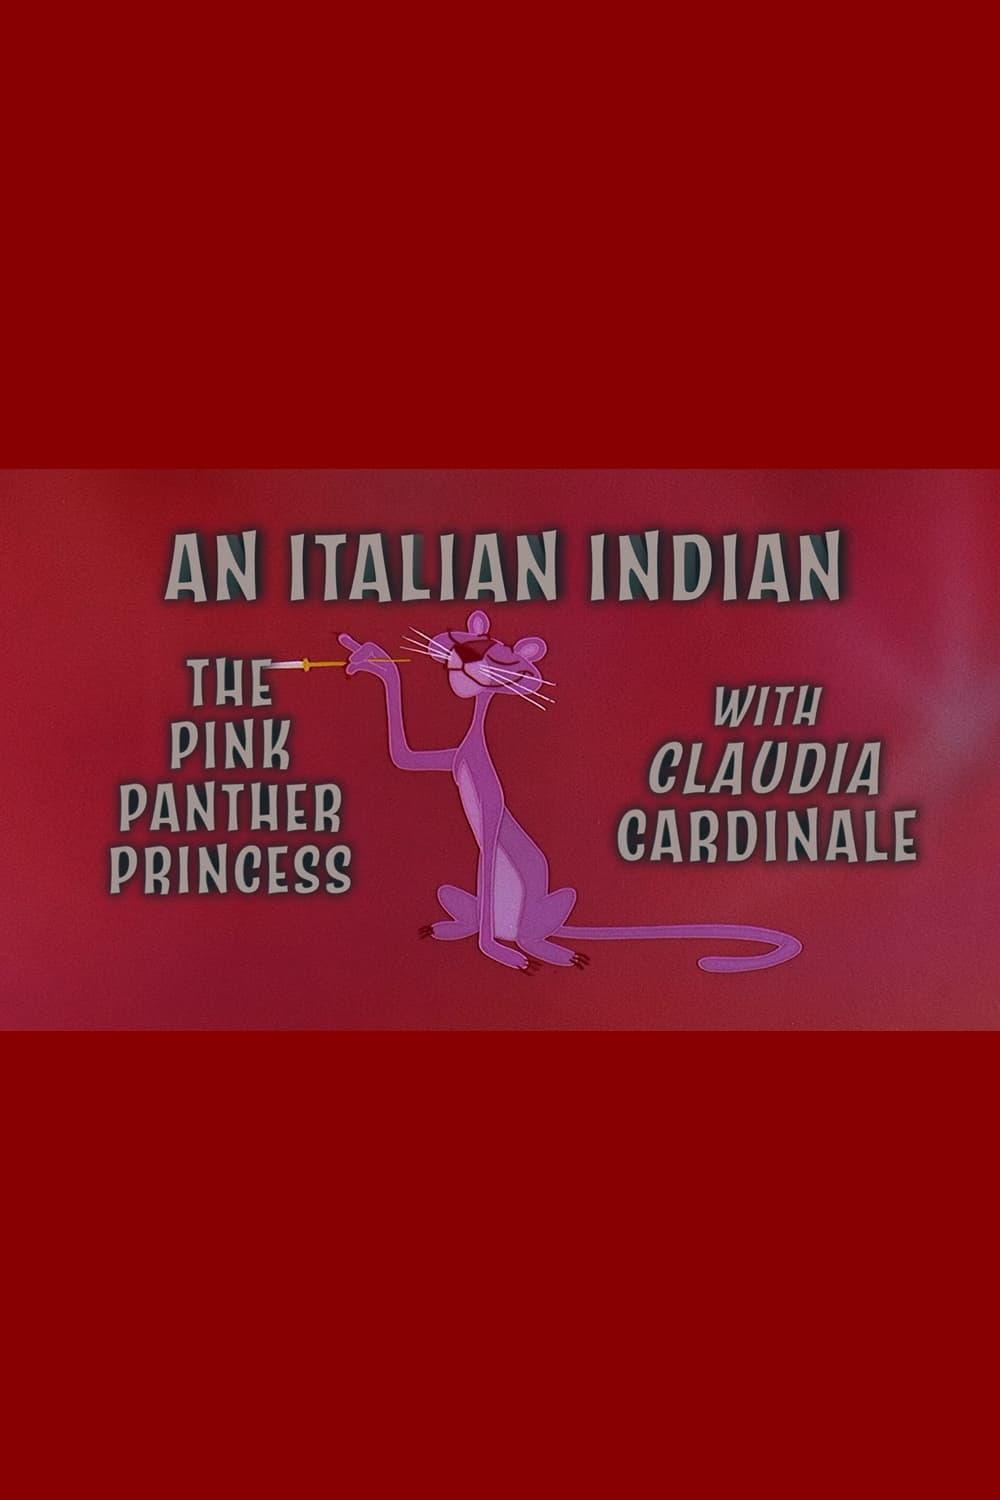 An Italian Indian: The Pink Panther Princess With Claudia Cardinale poster